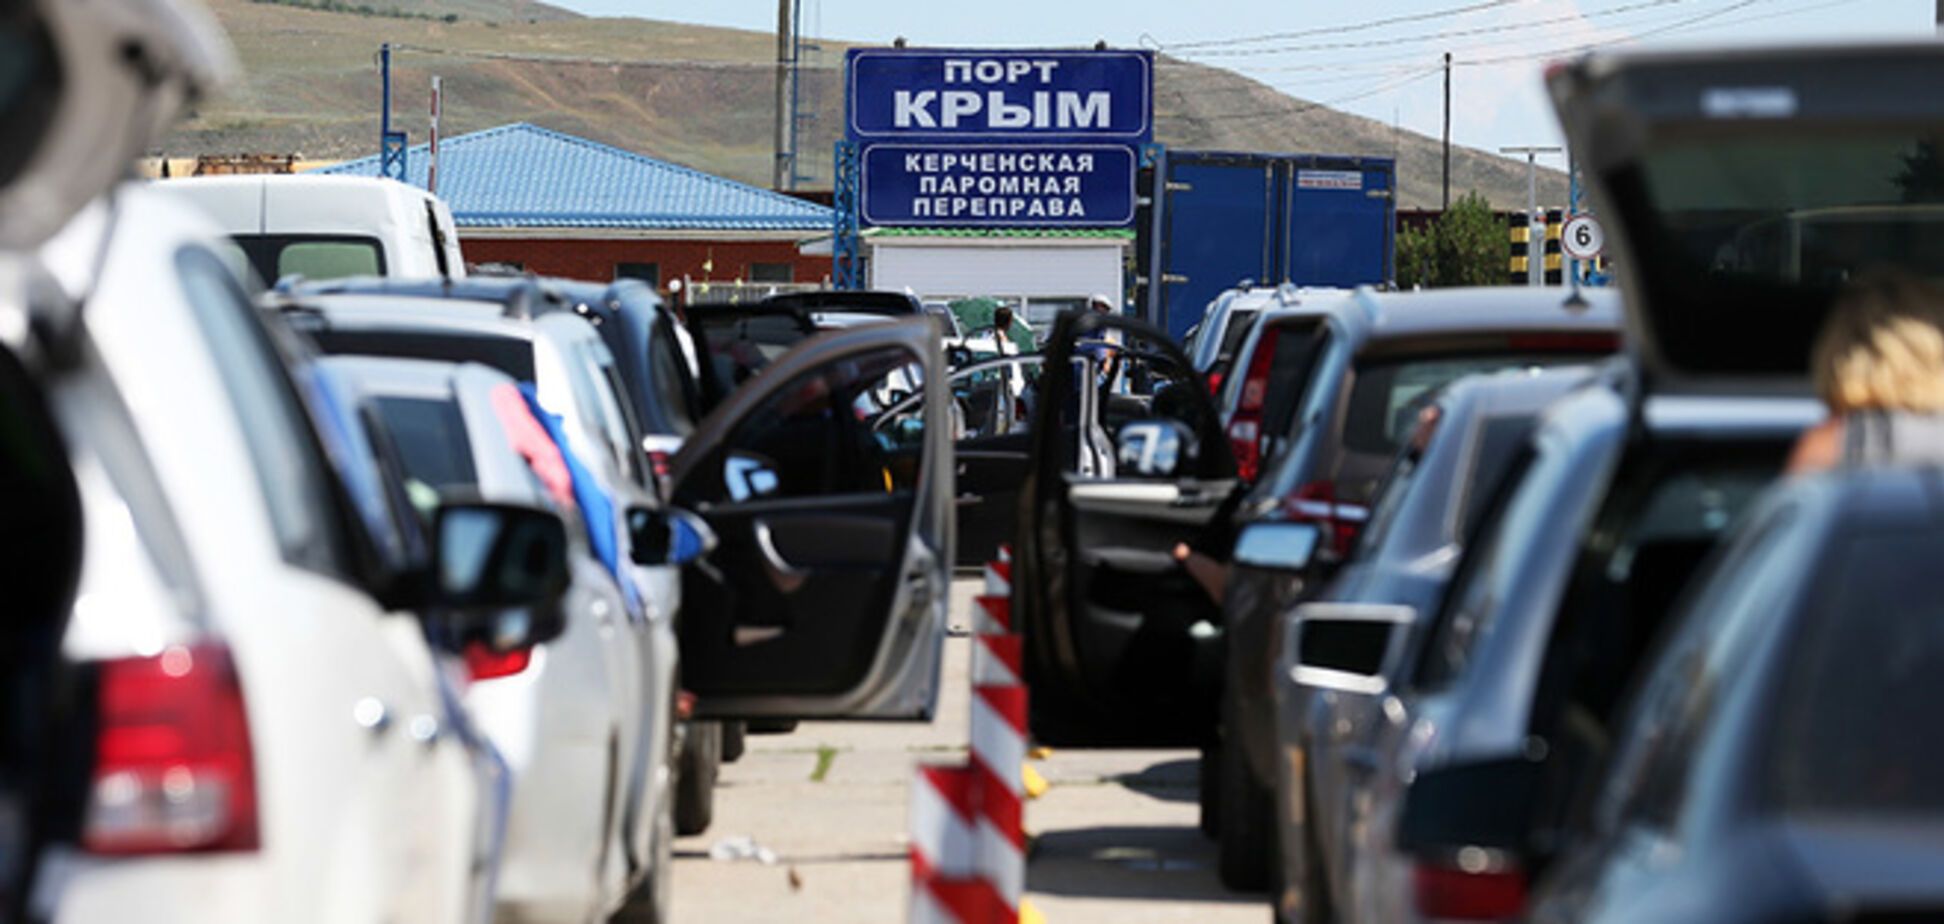 Керченская переправа закрылась из-за непогоды: в очереди сотни авто